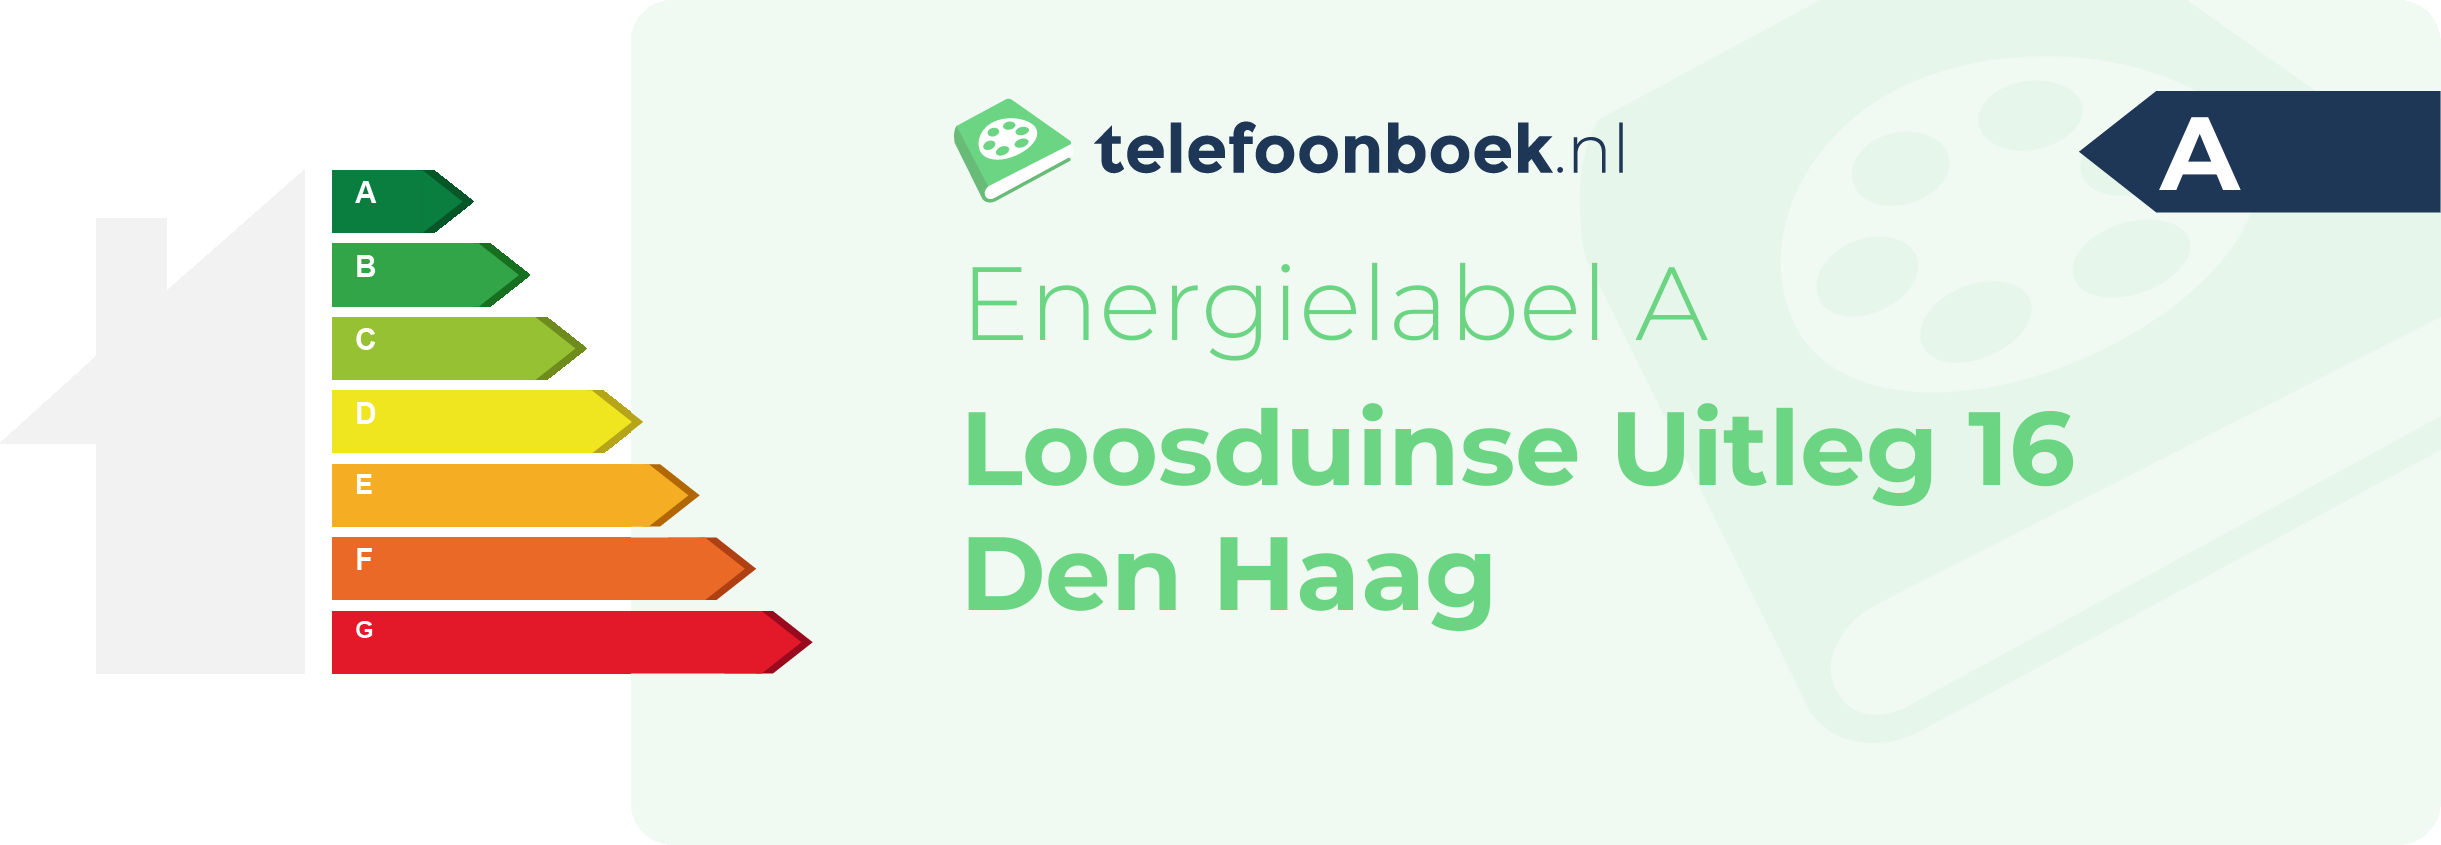 Energielabel Loosduinse Uitleg 16 Den Haag